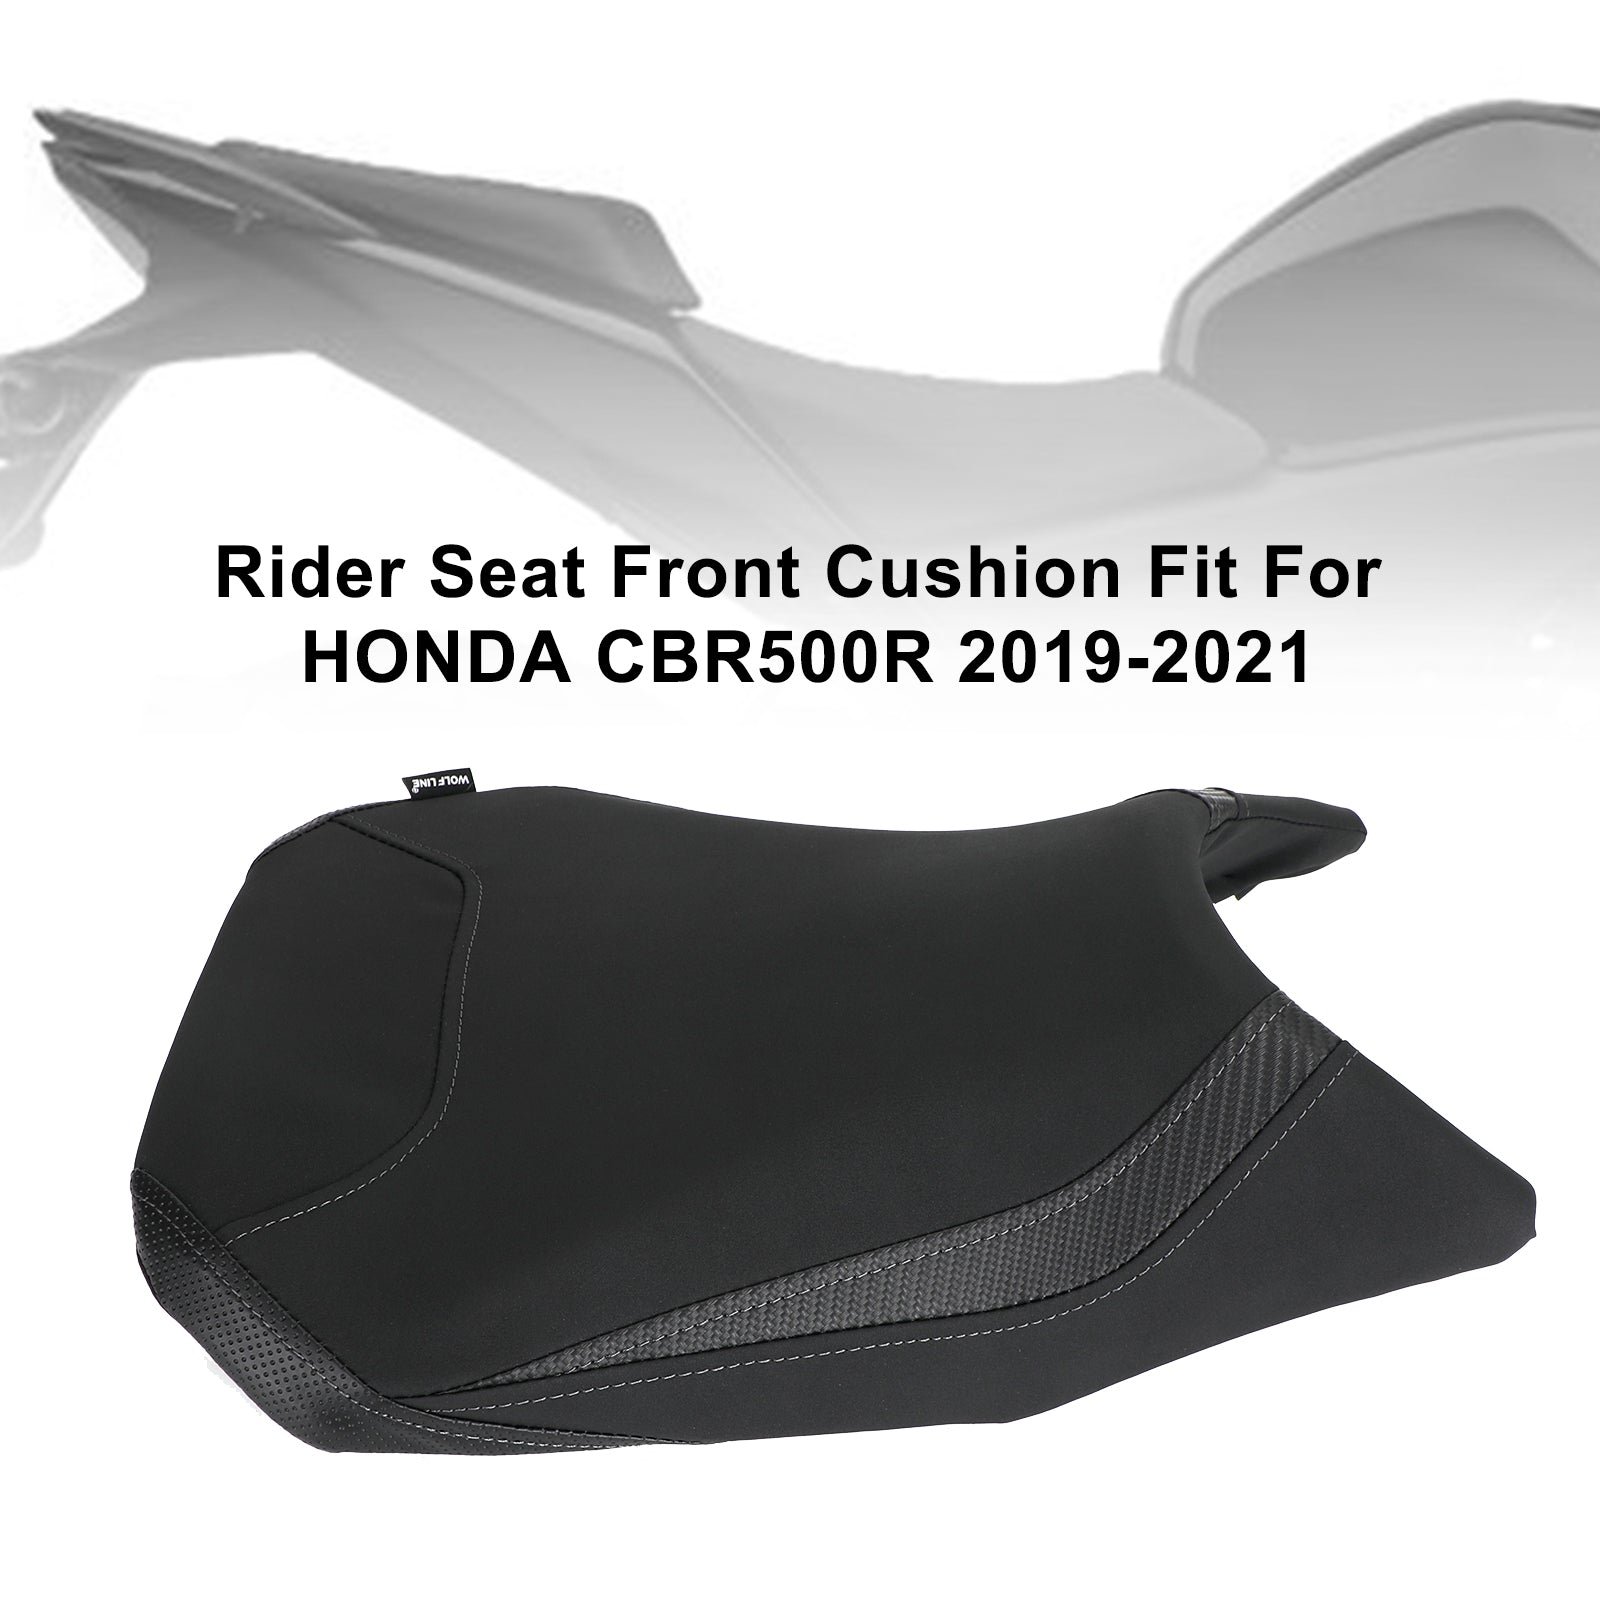 Ersetzen Sie den Fahrer- und Beifahrersitz vorne und hinten für Honda CBR500R CBR 500R 19-21